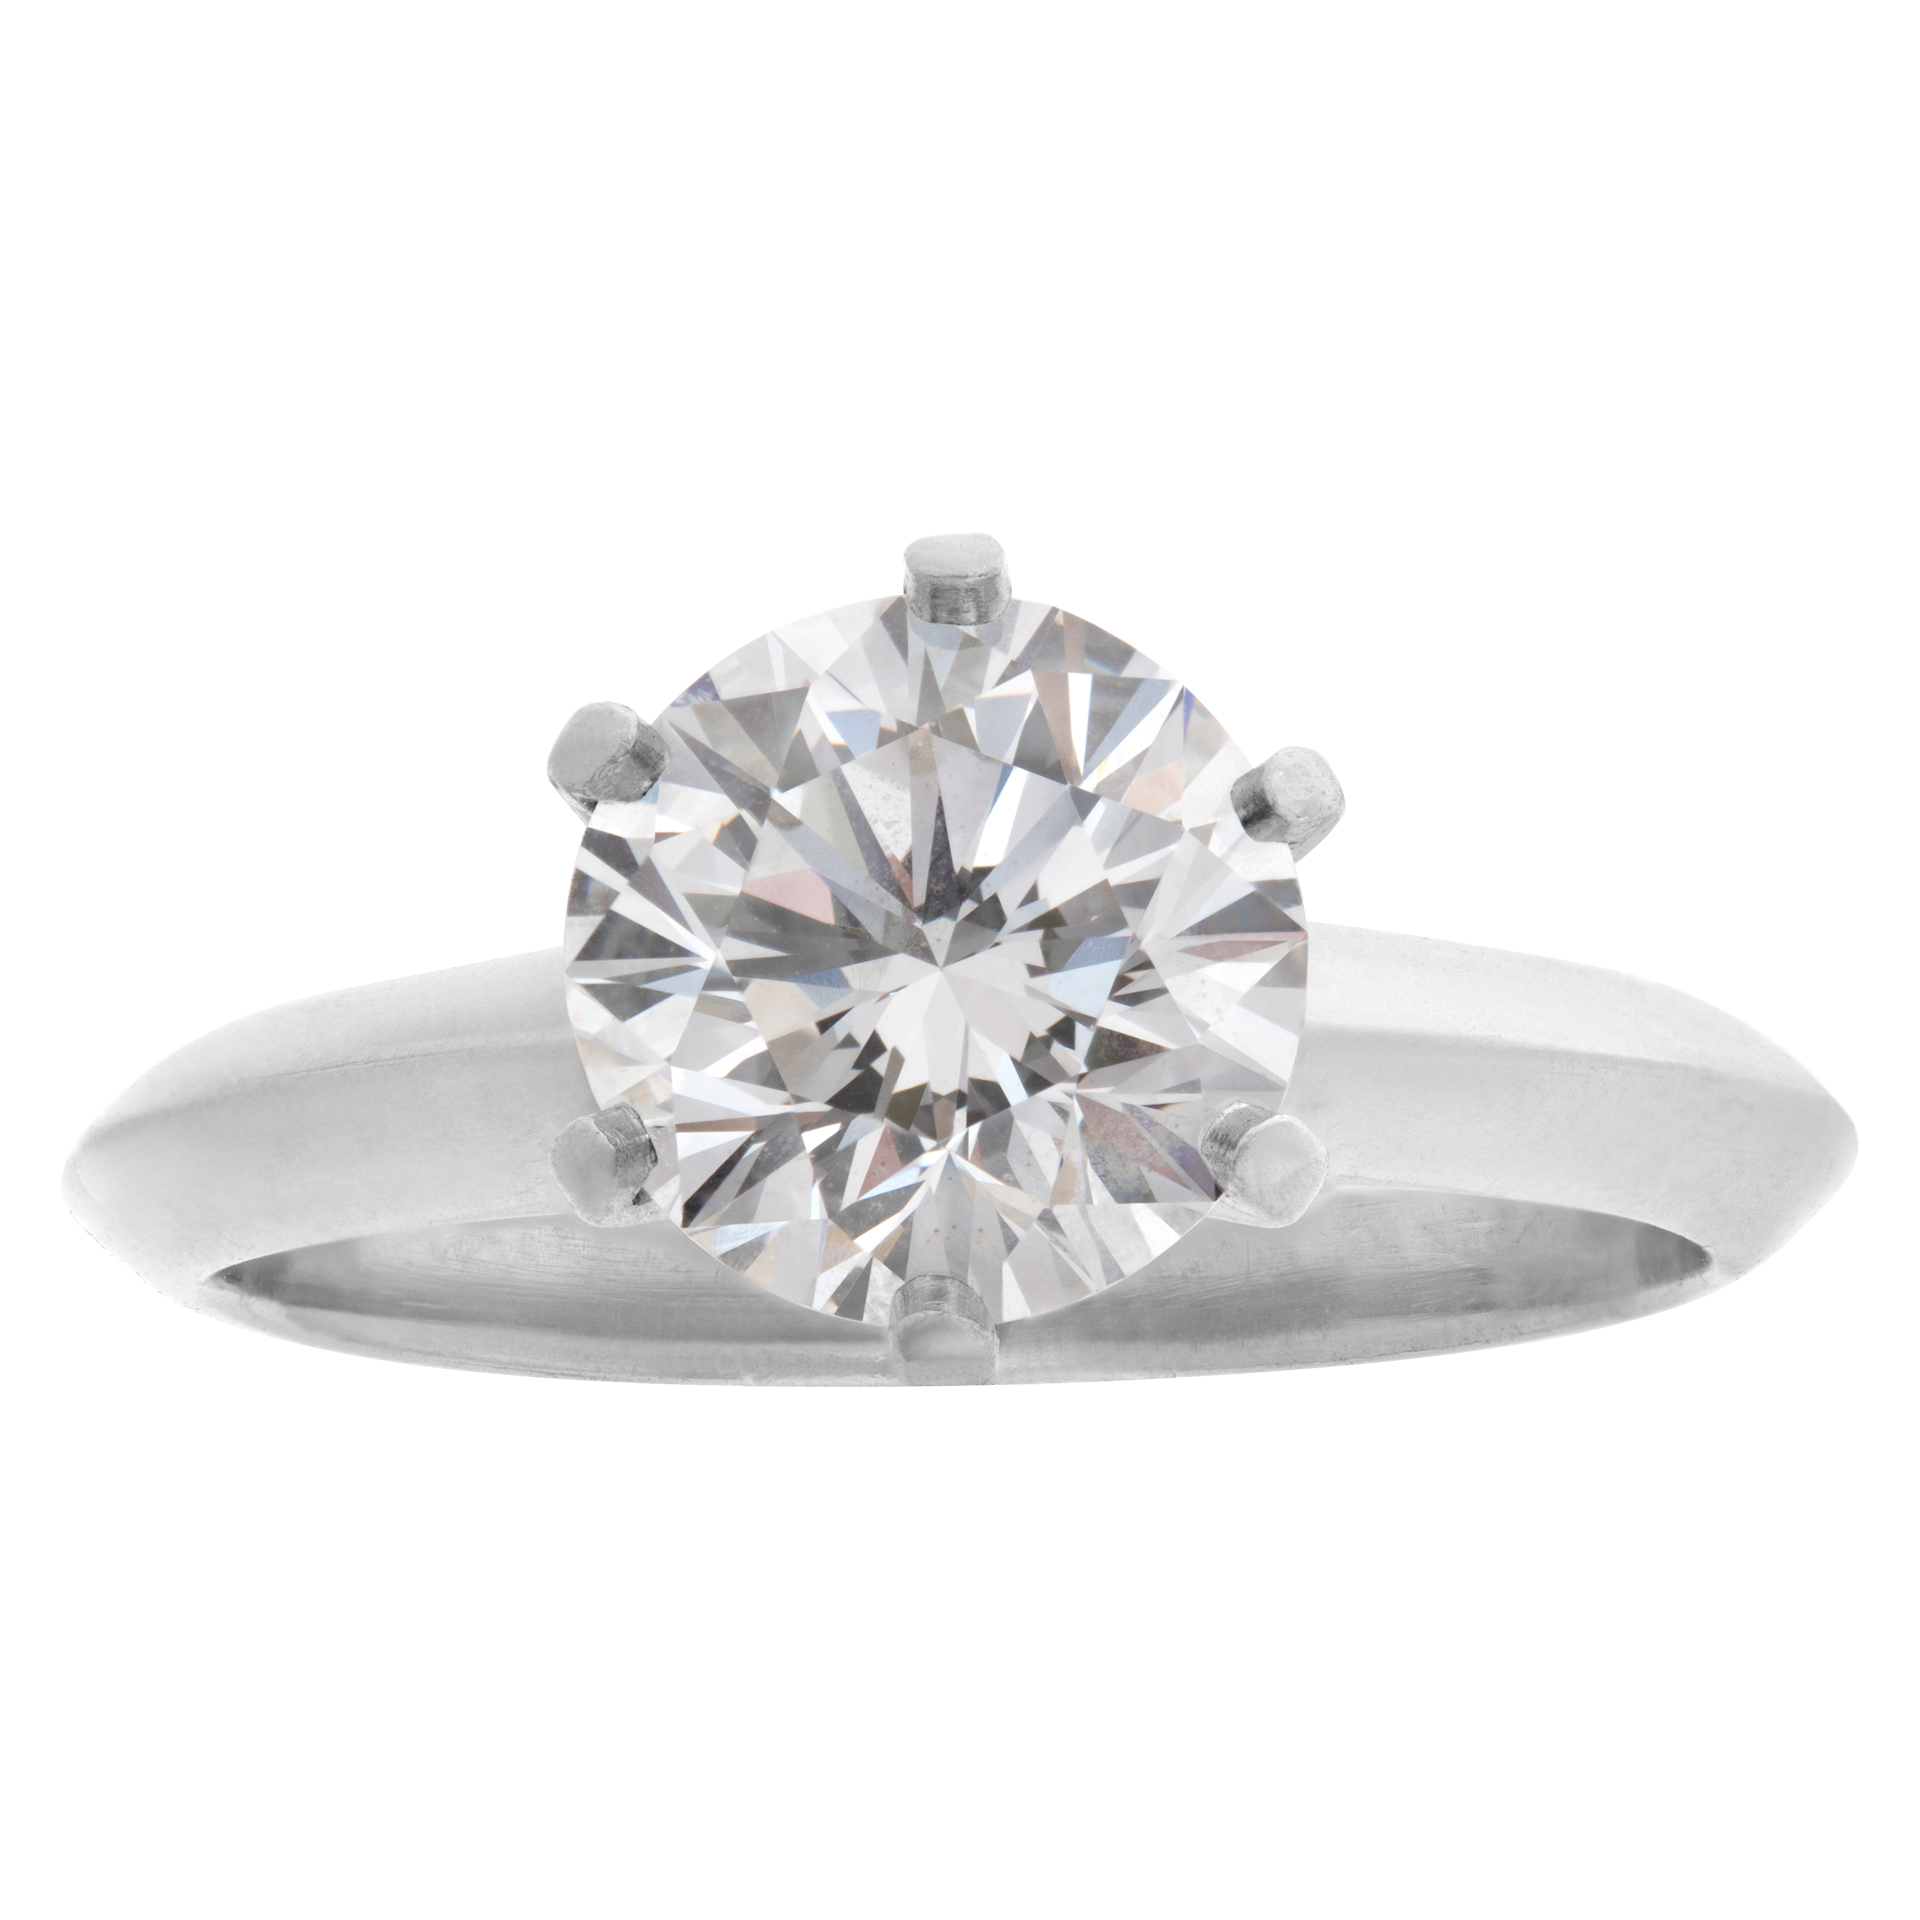 Tiffany & Co. round brilliant diamond 1.53 carat (E color, VVS2 clarity) ring in platinum